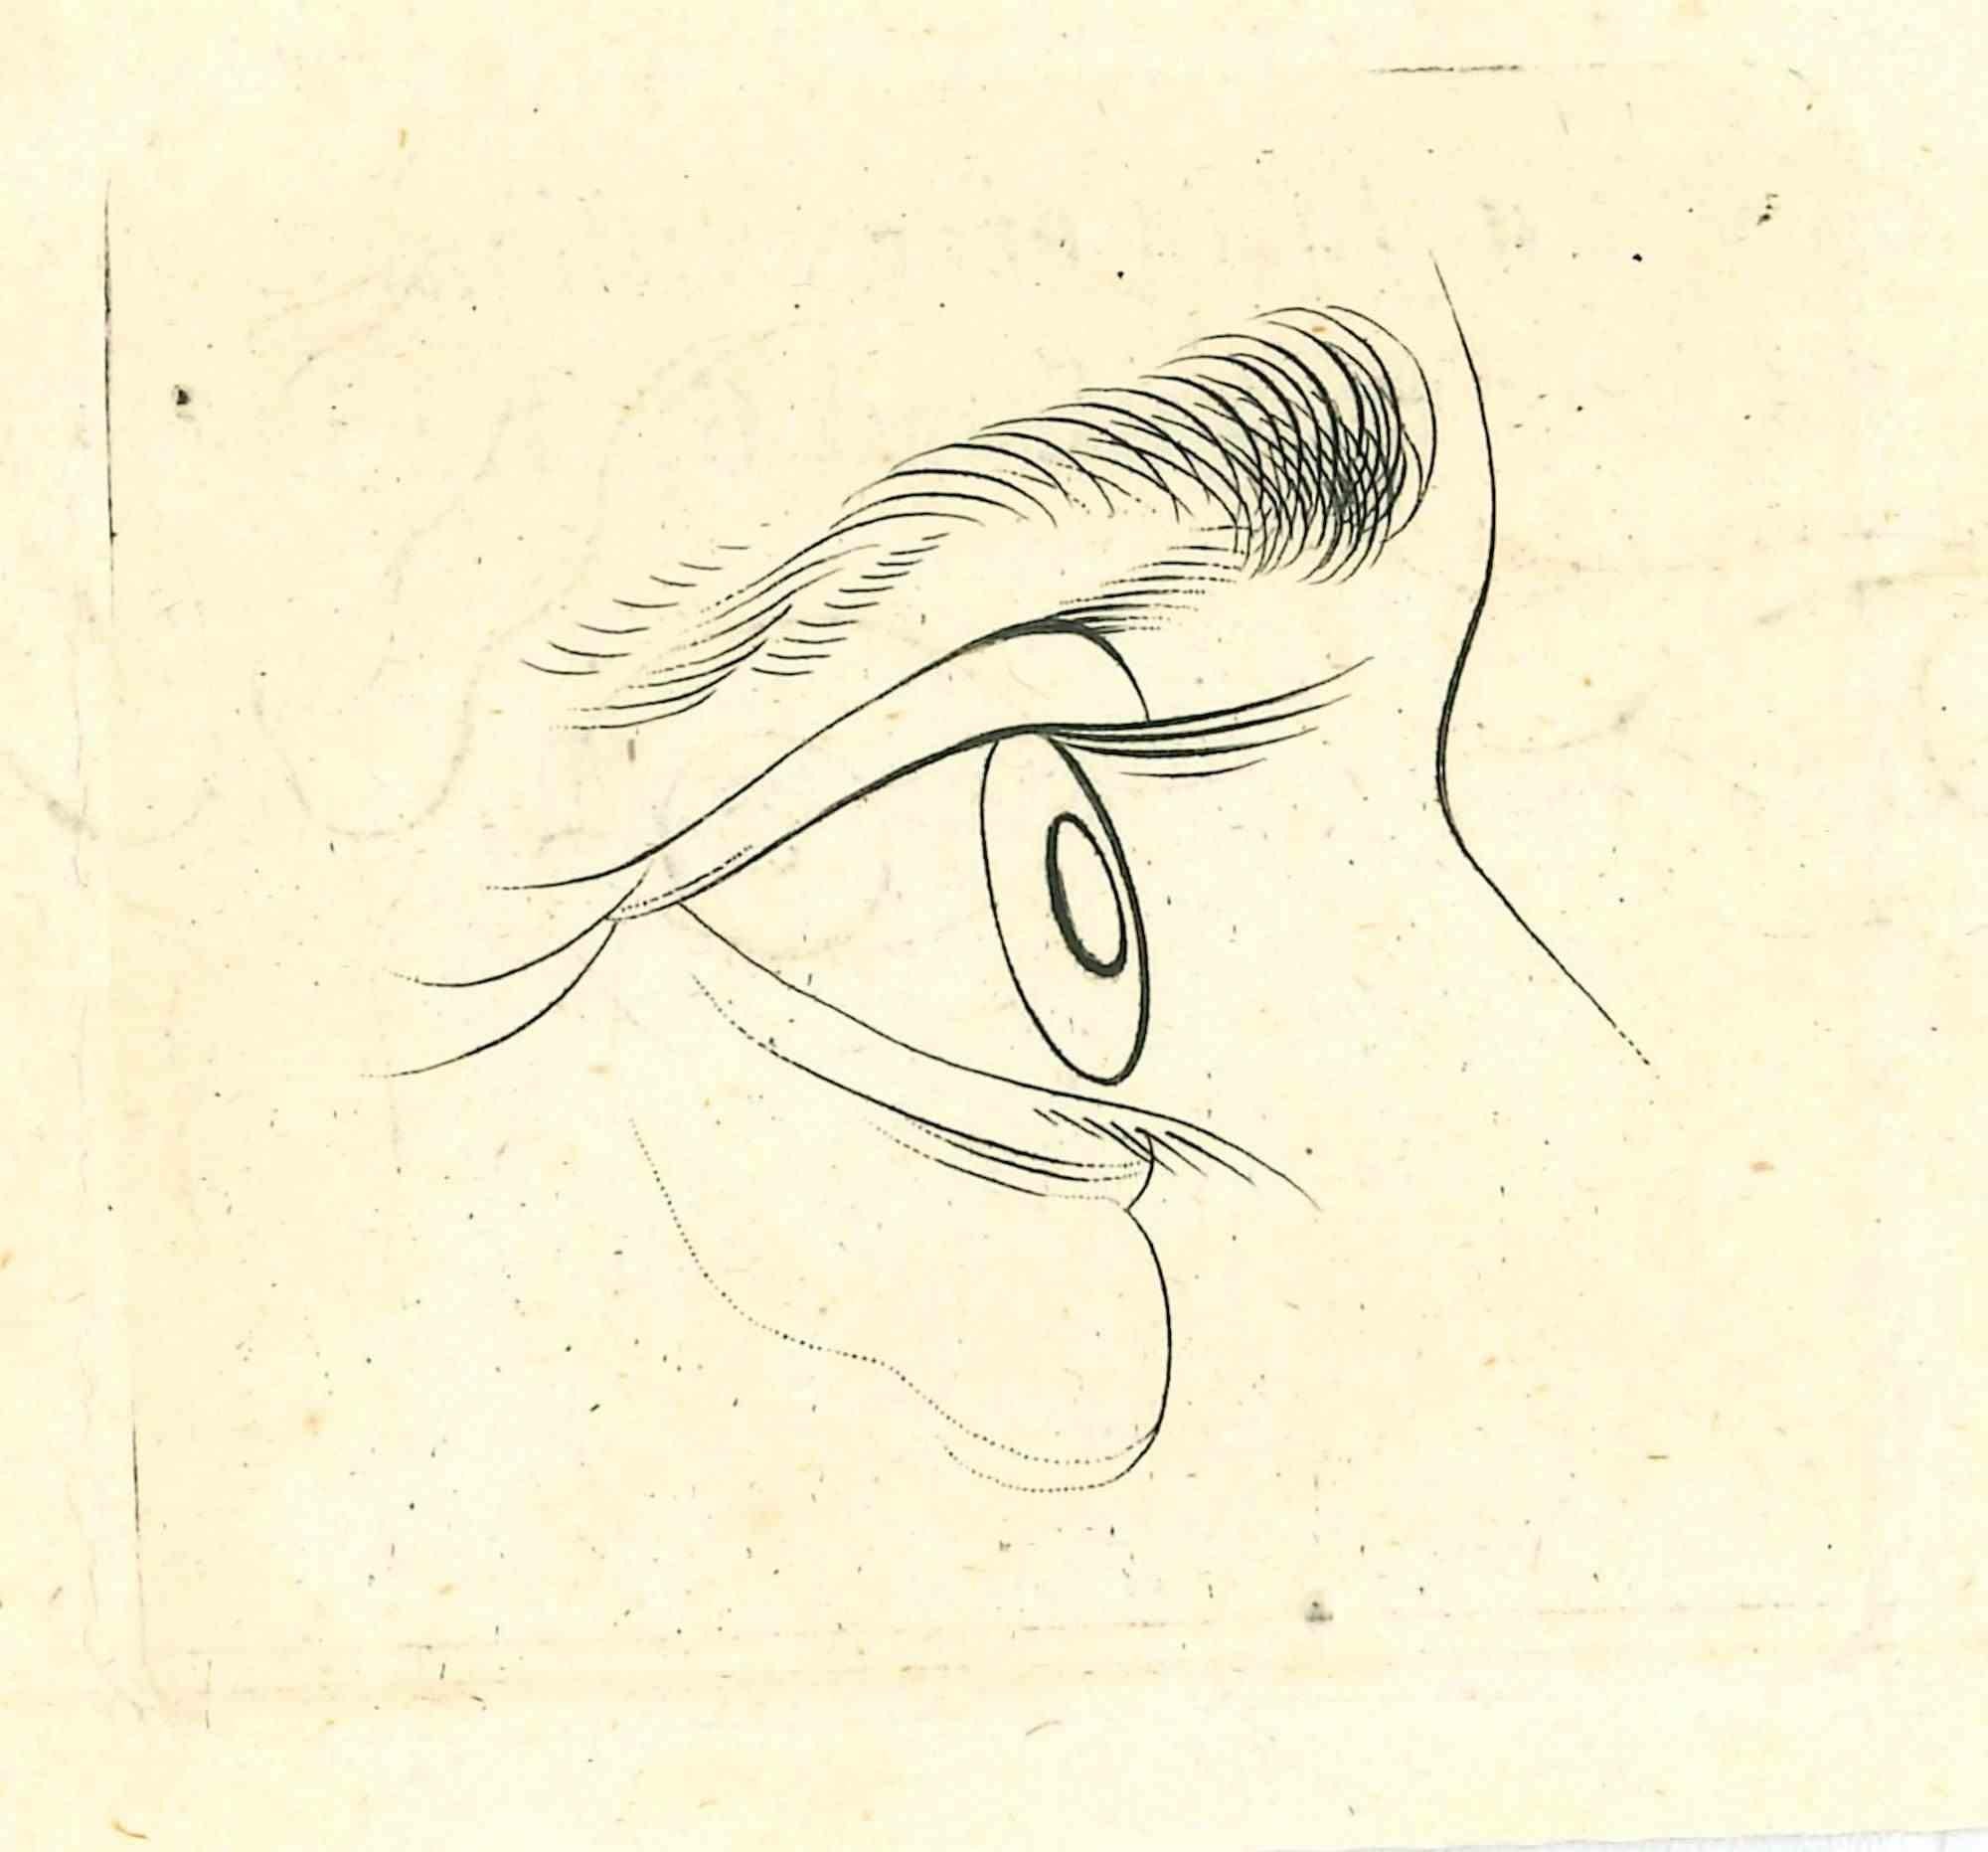 Das Auge - Die Physiognomie ist eine Originalradierung von Thomas Holloway für Johann Caspar Lavaters "Essays on Physiognomy, Designed to Promote the Knowledge and the Love of Mankind", London, Bensley, 1810. 

Mit dem Vermerk auf der